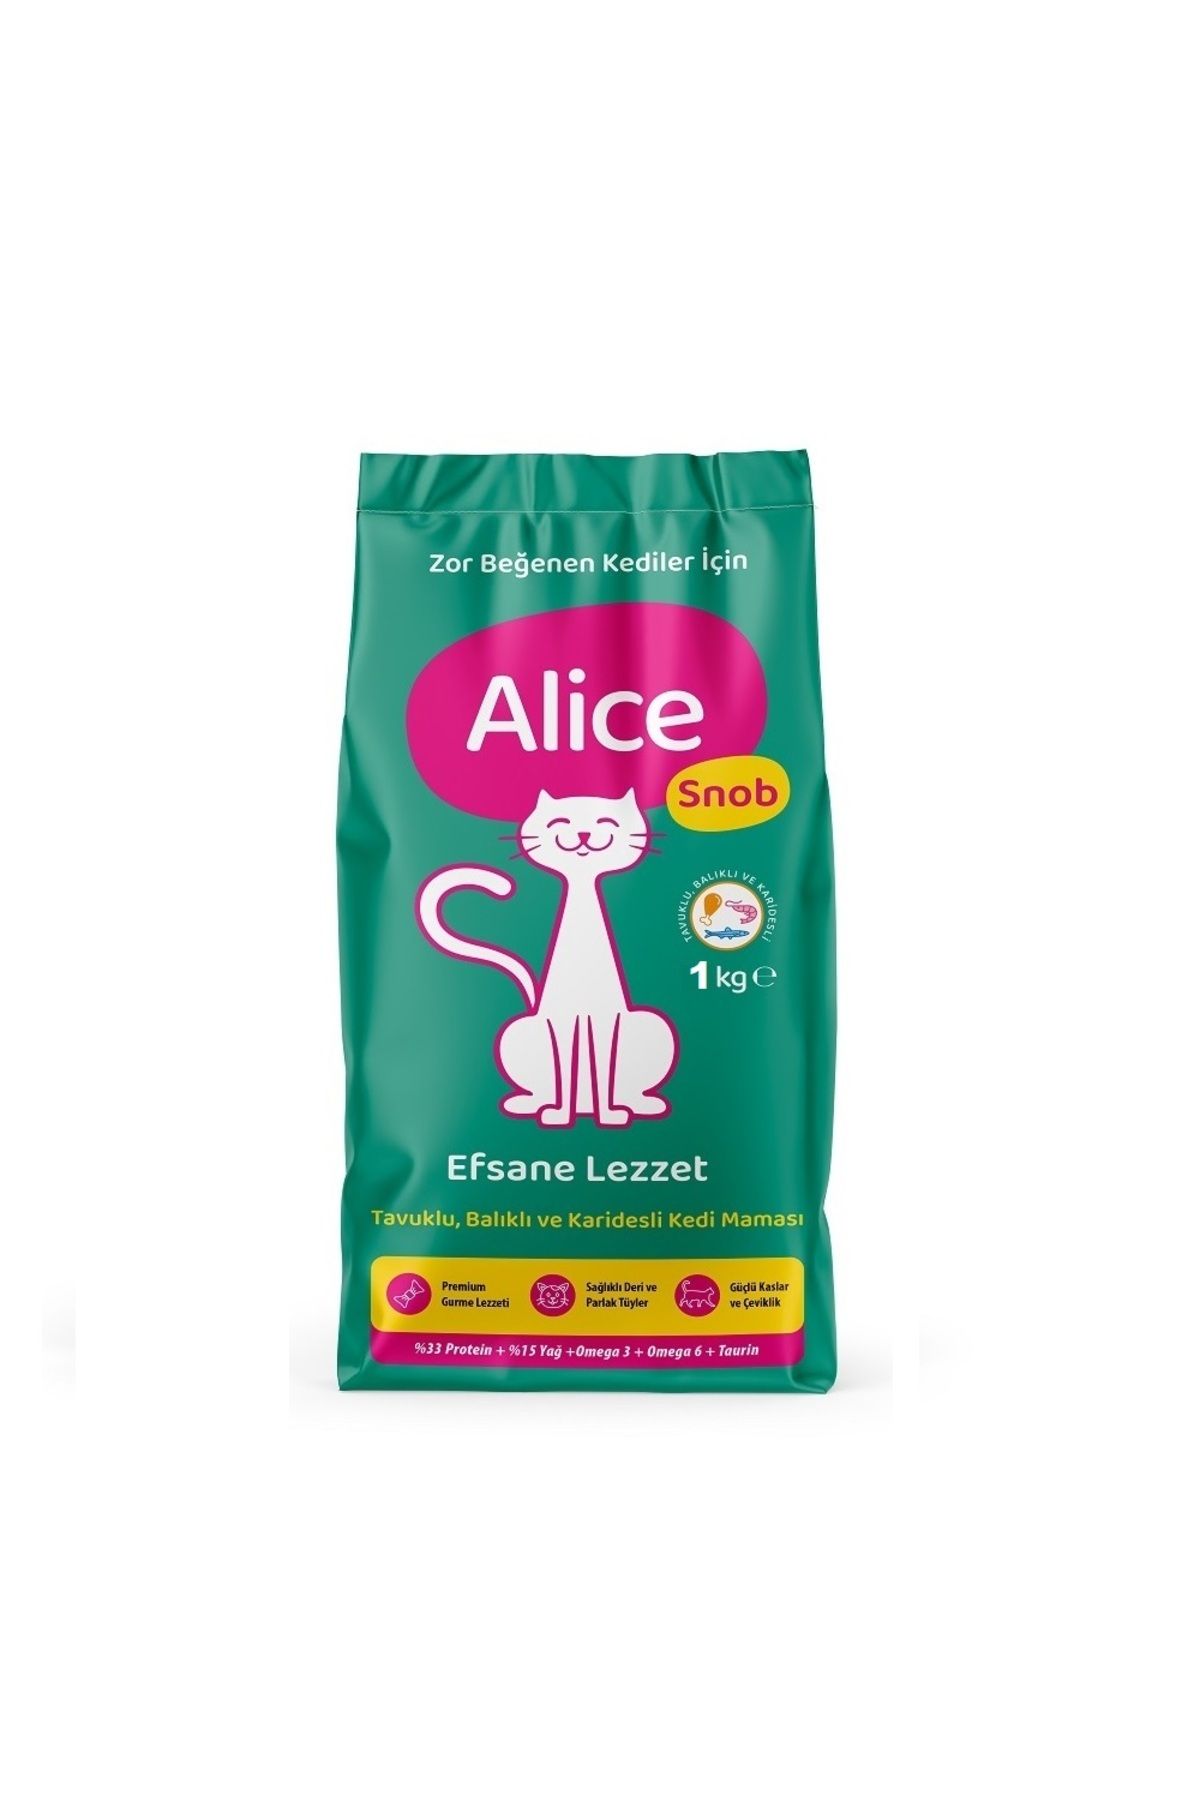 Alice Snob Zor Beğenenler Için Kedi Maması 1 Kg